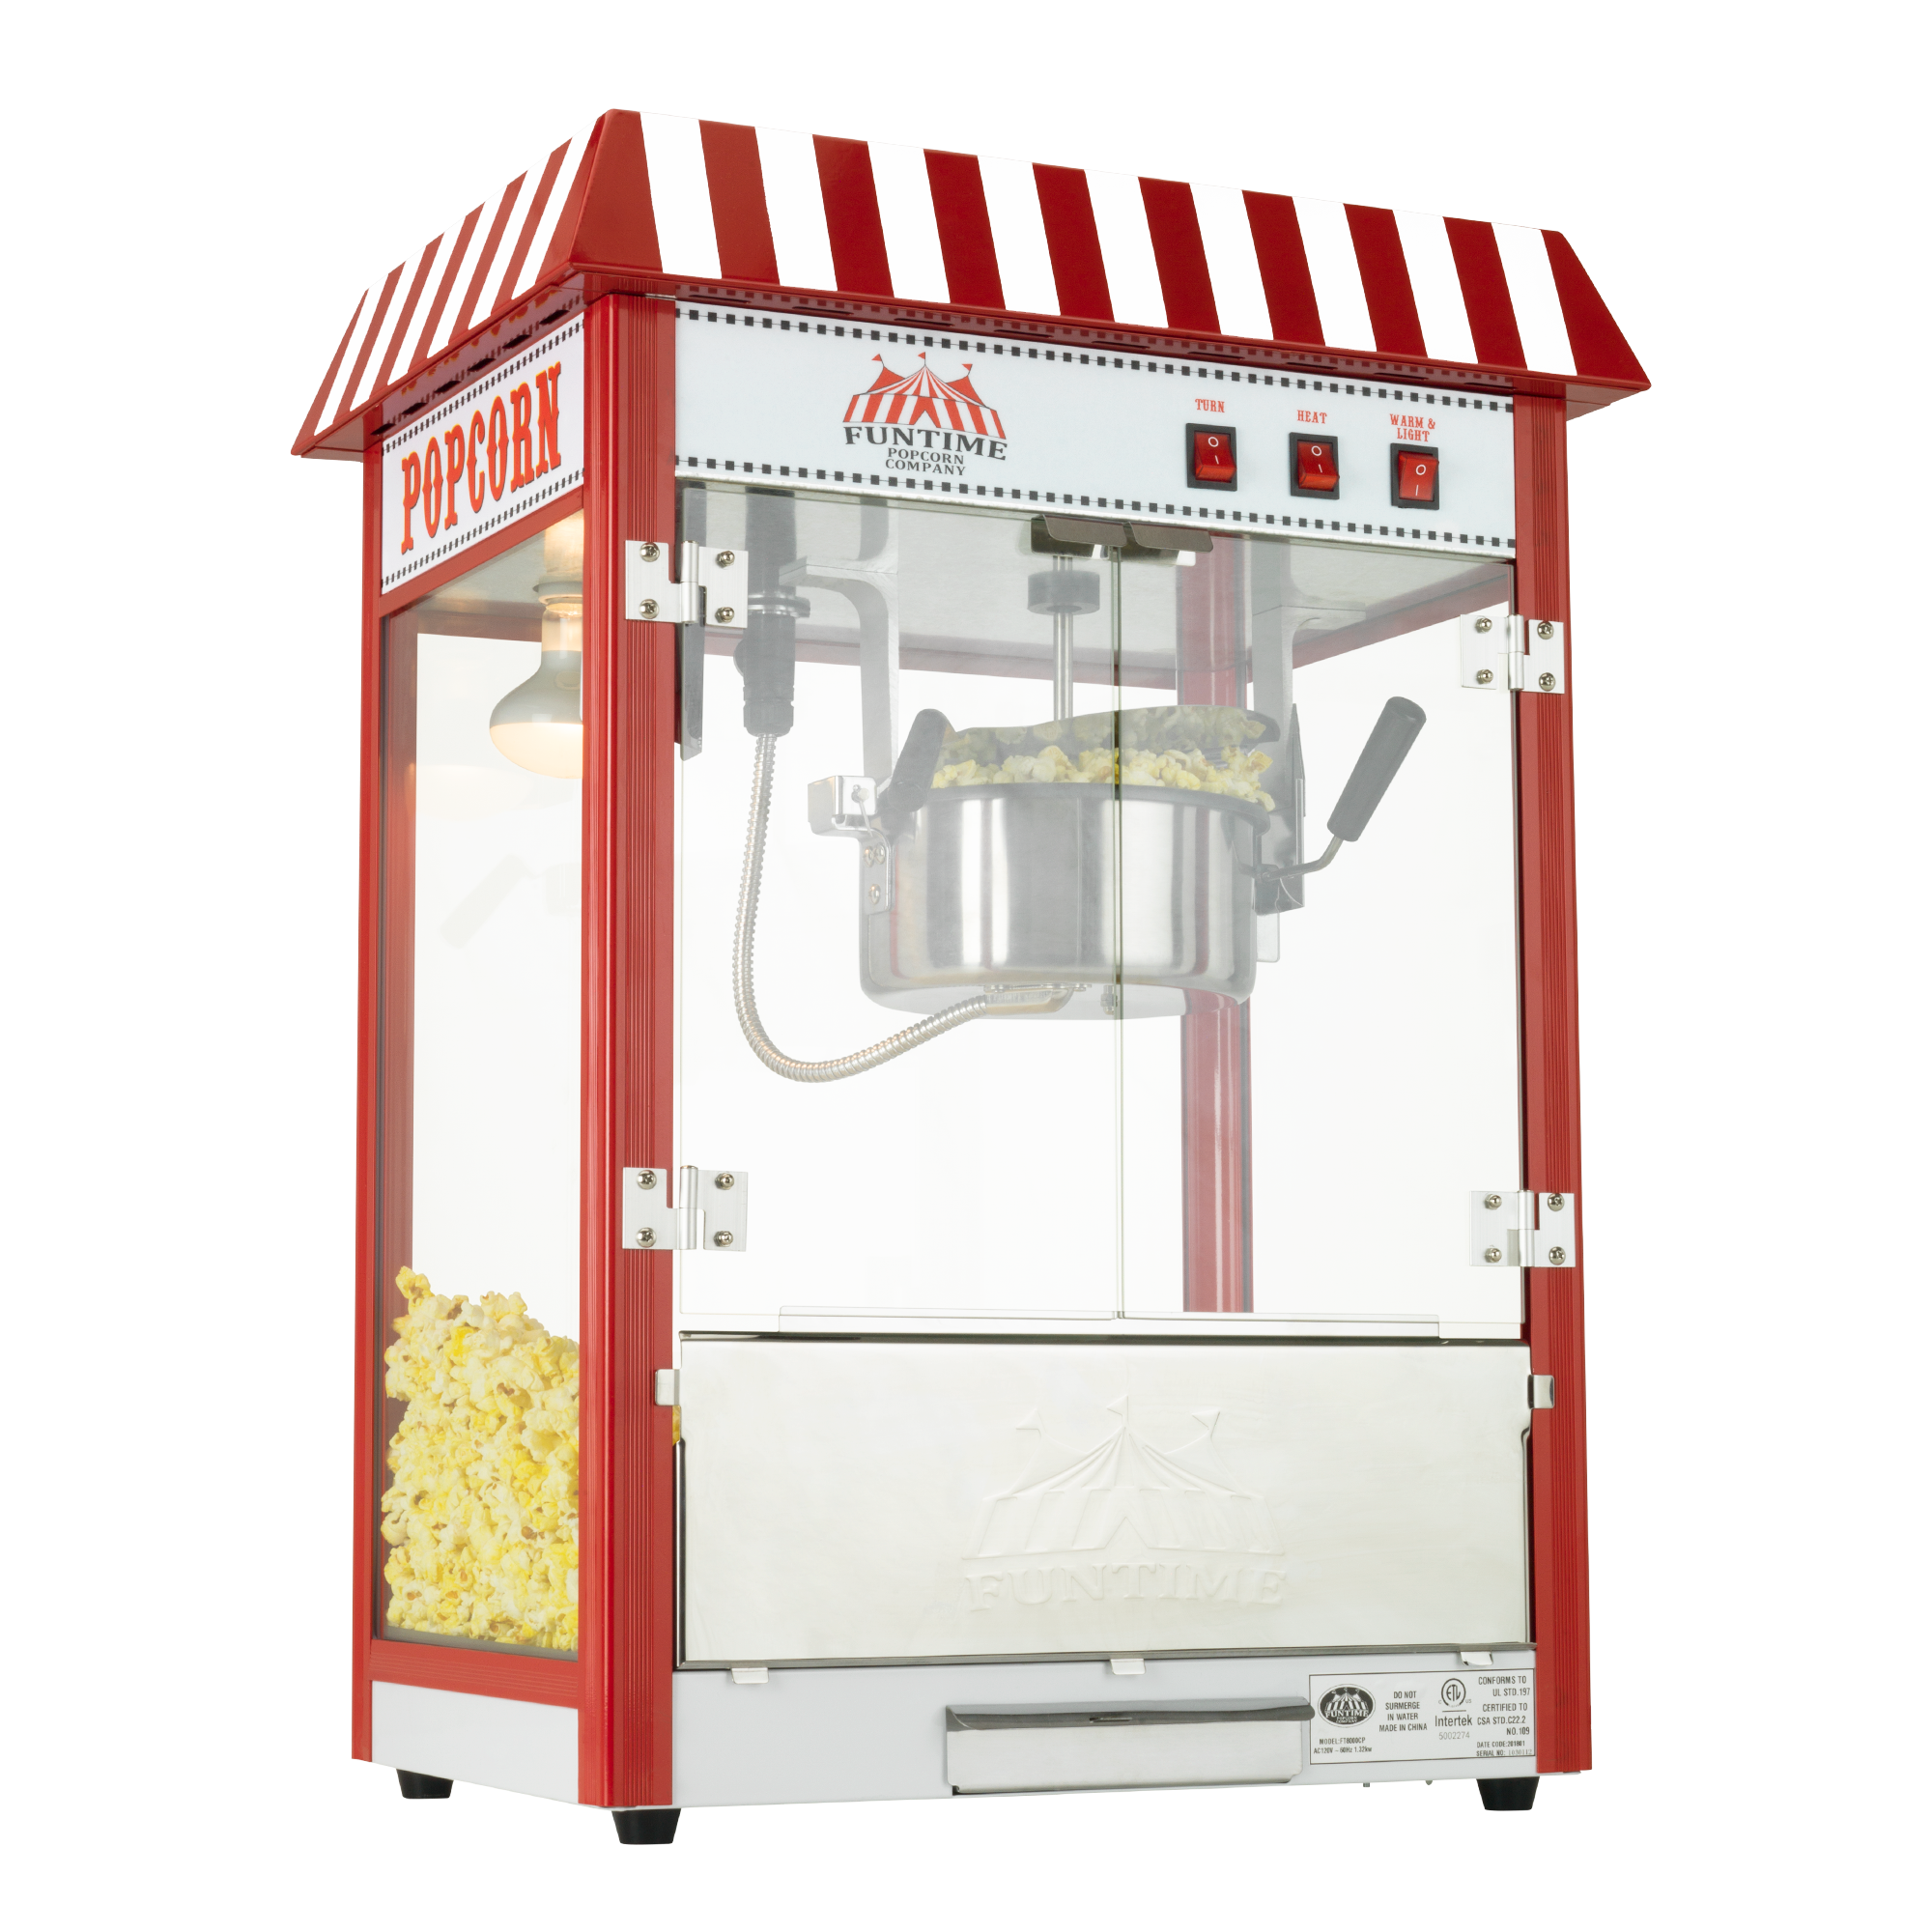 2408 8oz Fun Pop Classic Popcorn Popper / Machine